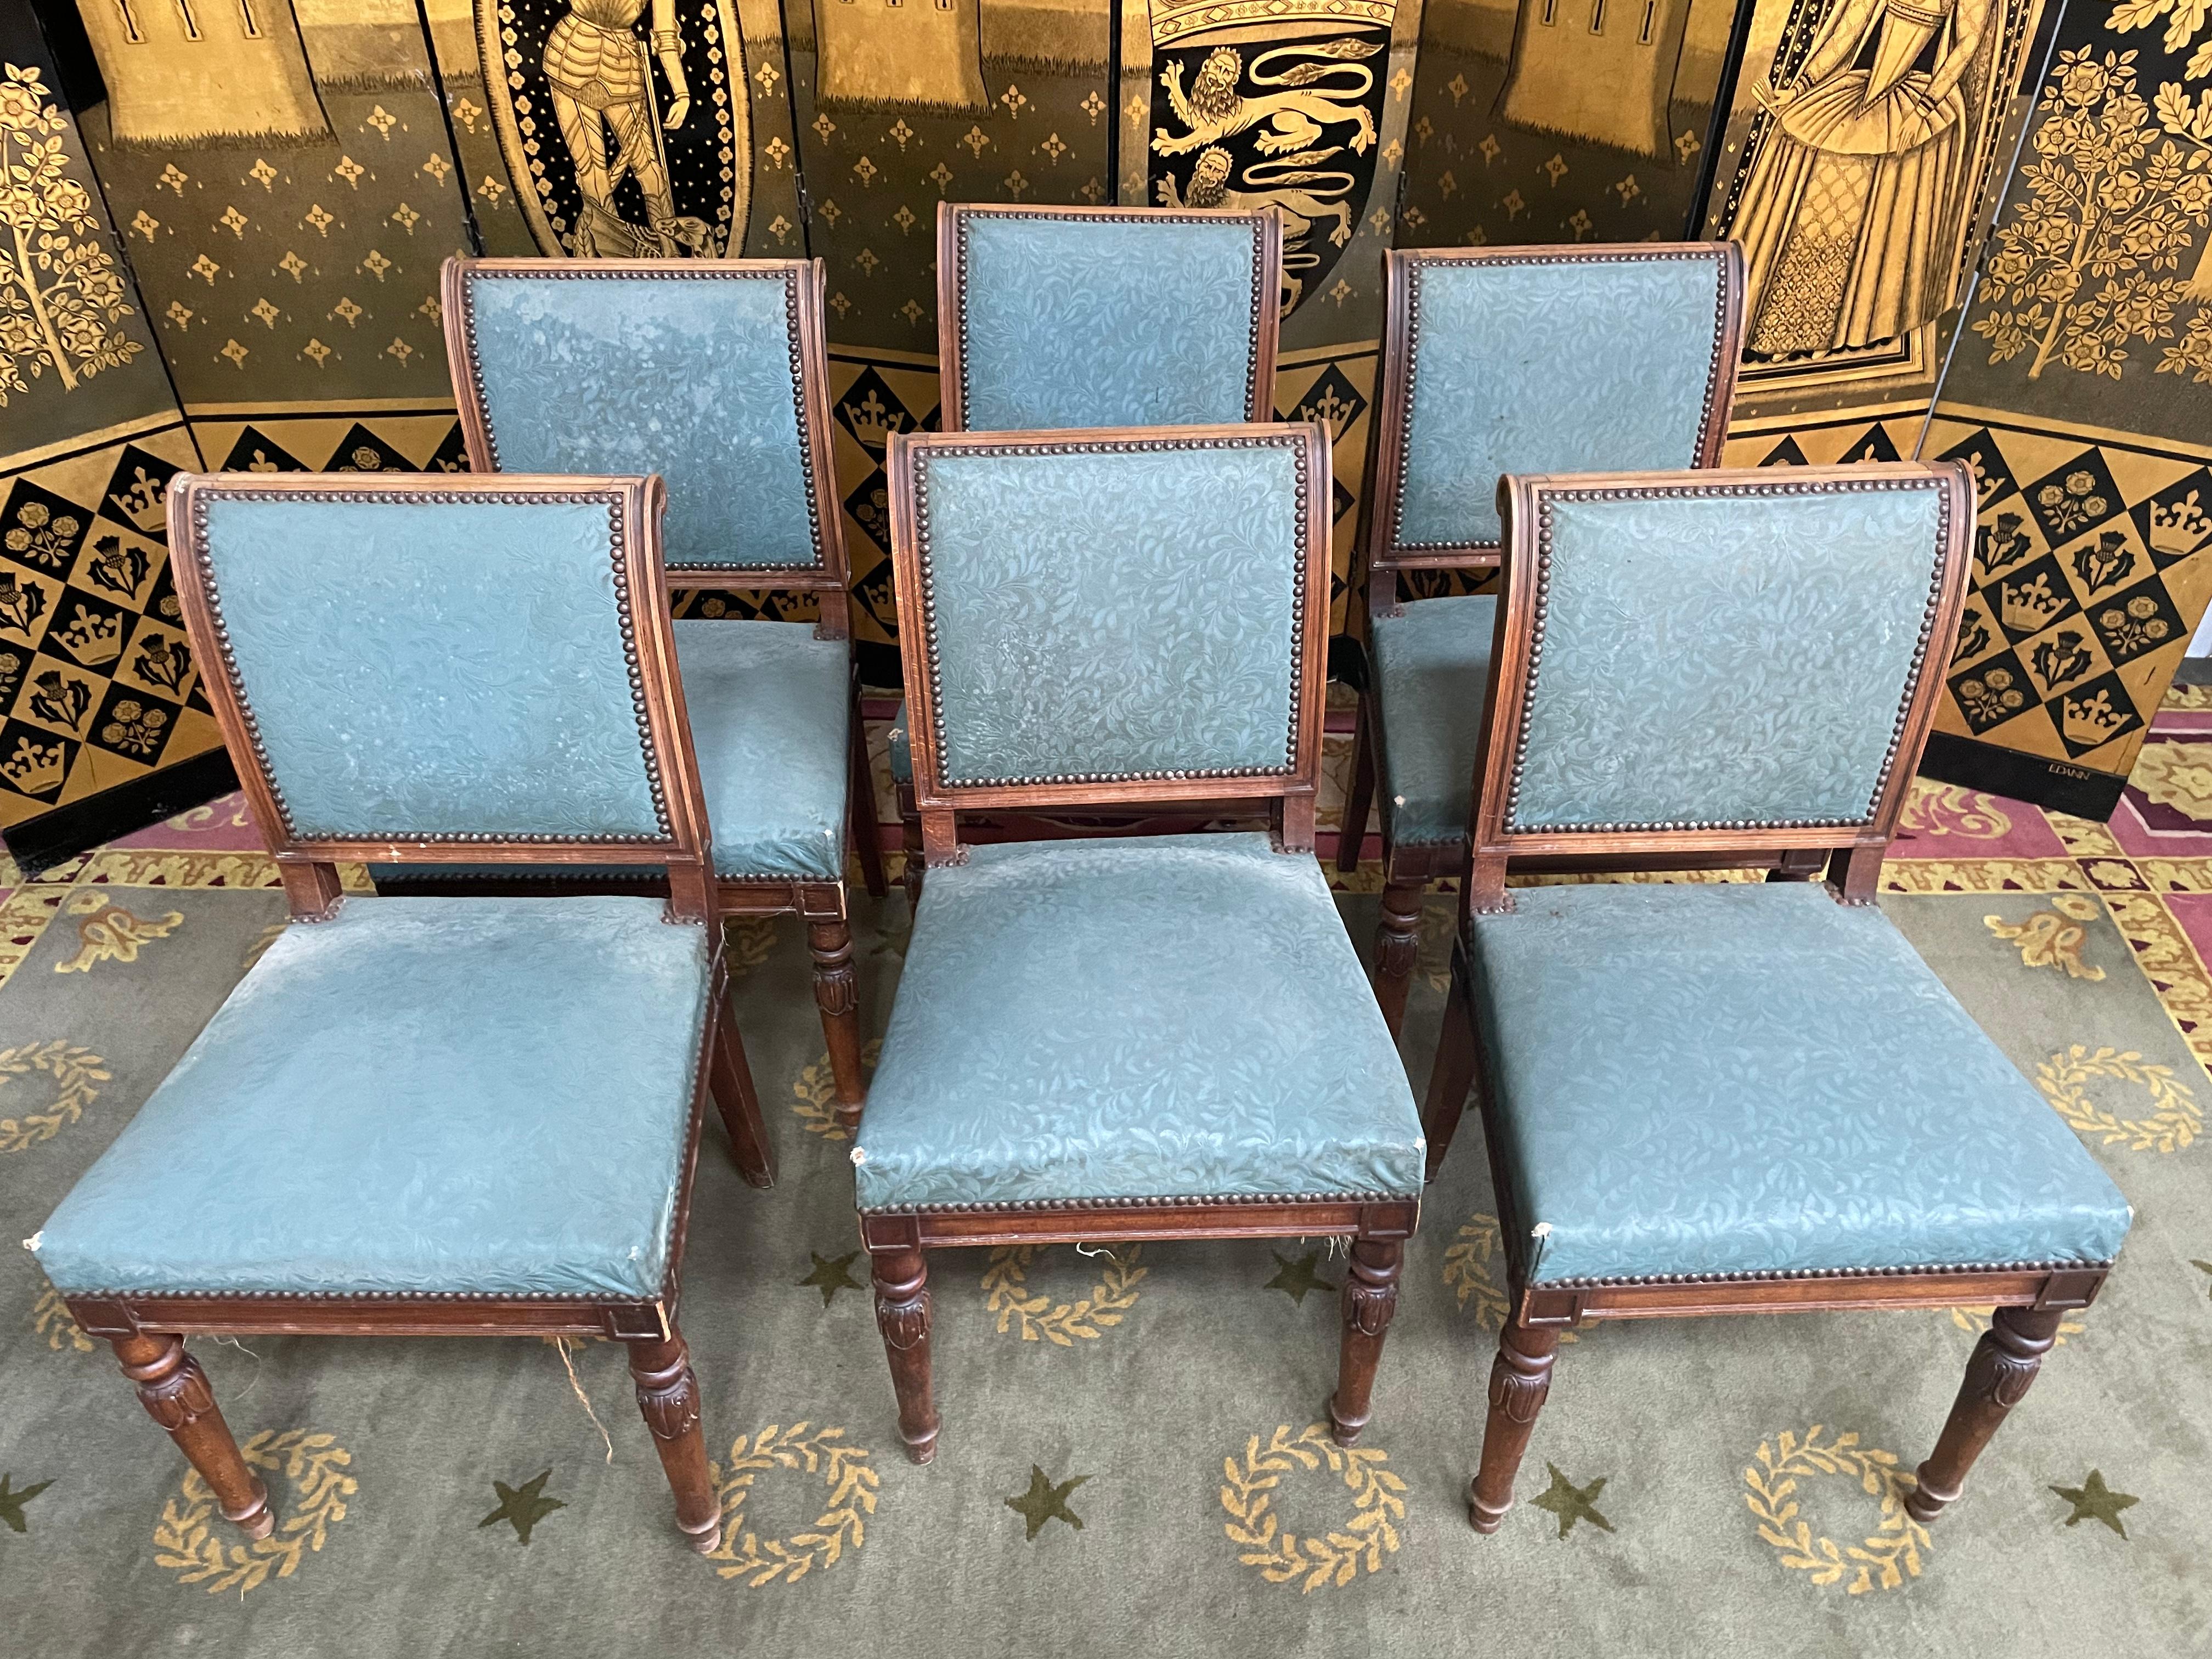 Suite de 6 chaises de style Louis XVI avec dossiers à enroulement de belle qualité. 
 
Entièrement à restaurer. 
 
Vous souhaitez choisir votre tissu et nous le faire parvenir pour que nous effectuions la réfection pour vous ?